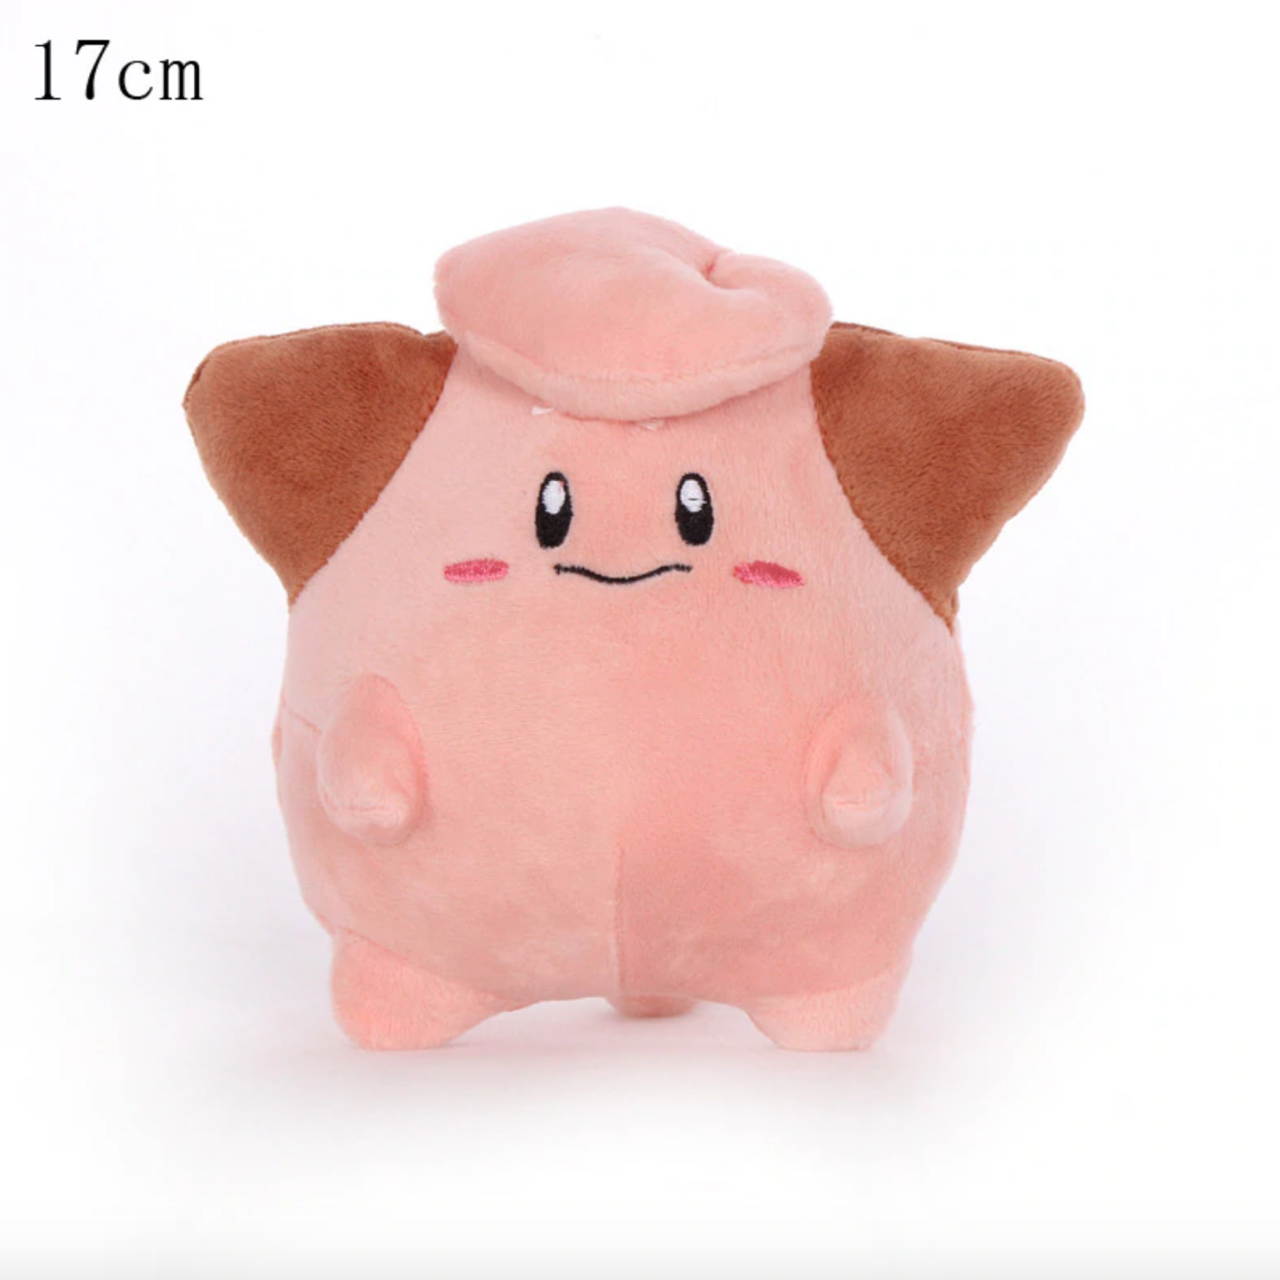 Cleffa - Pokemon Knuffel met zuignap 17cm (ophangbaar)